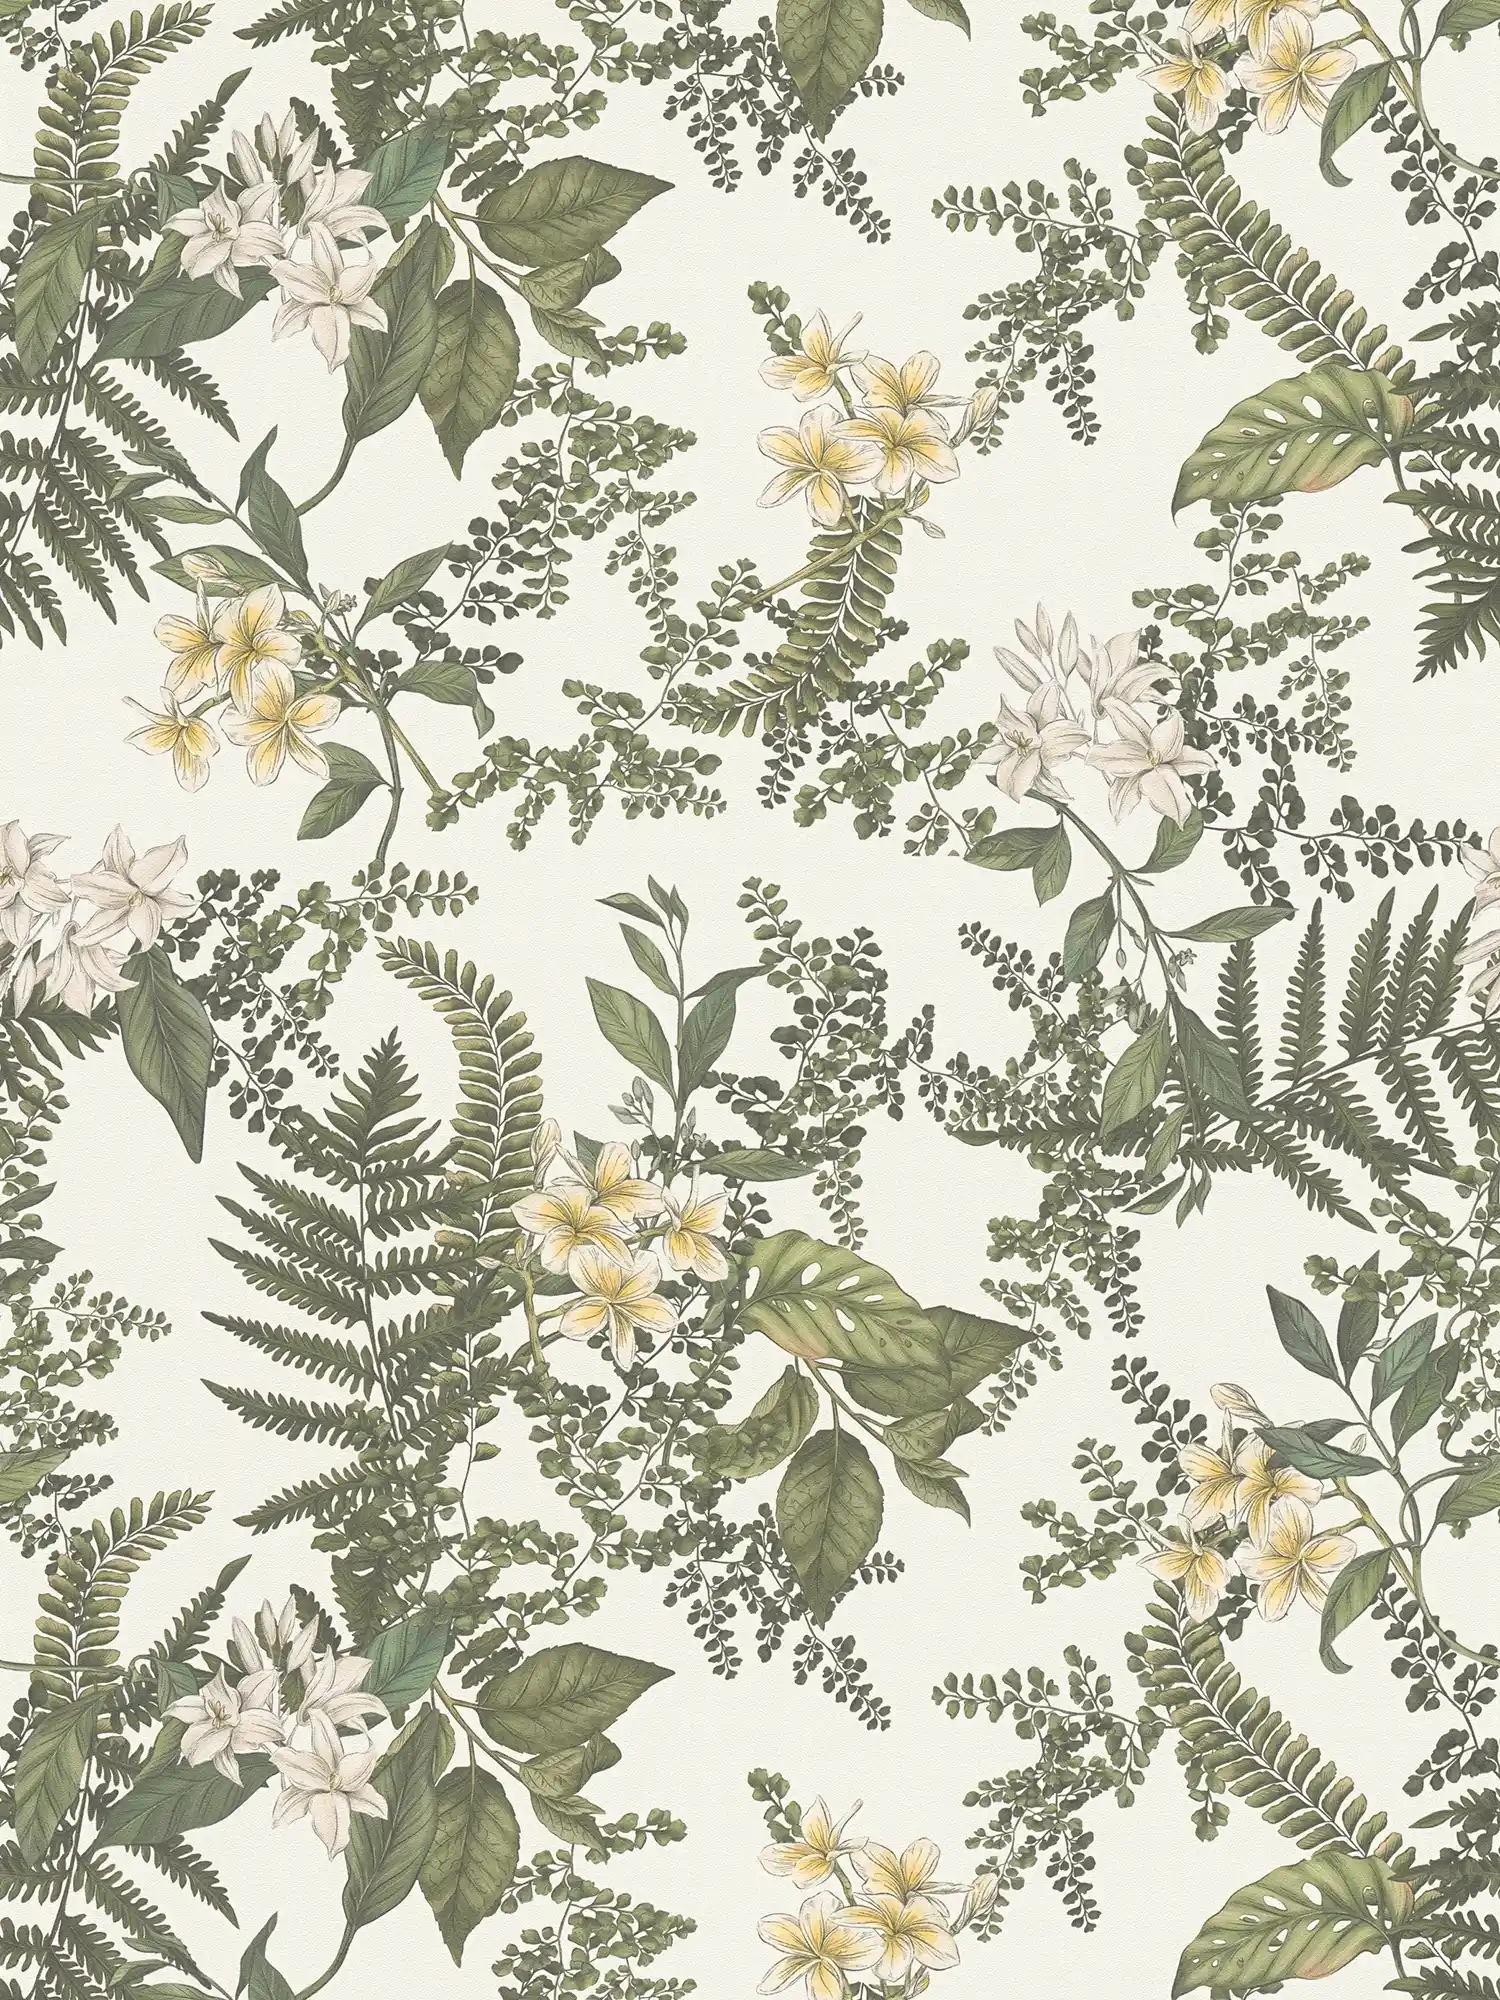         papier peint en papier floral moderne avec fleurs & herbes structuré mat - blanc, vert foncé, jaune
    